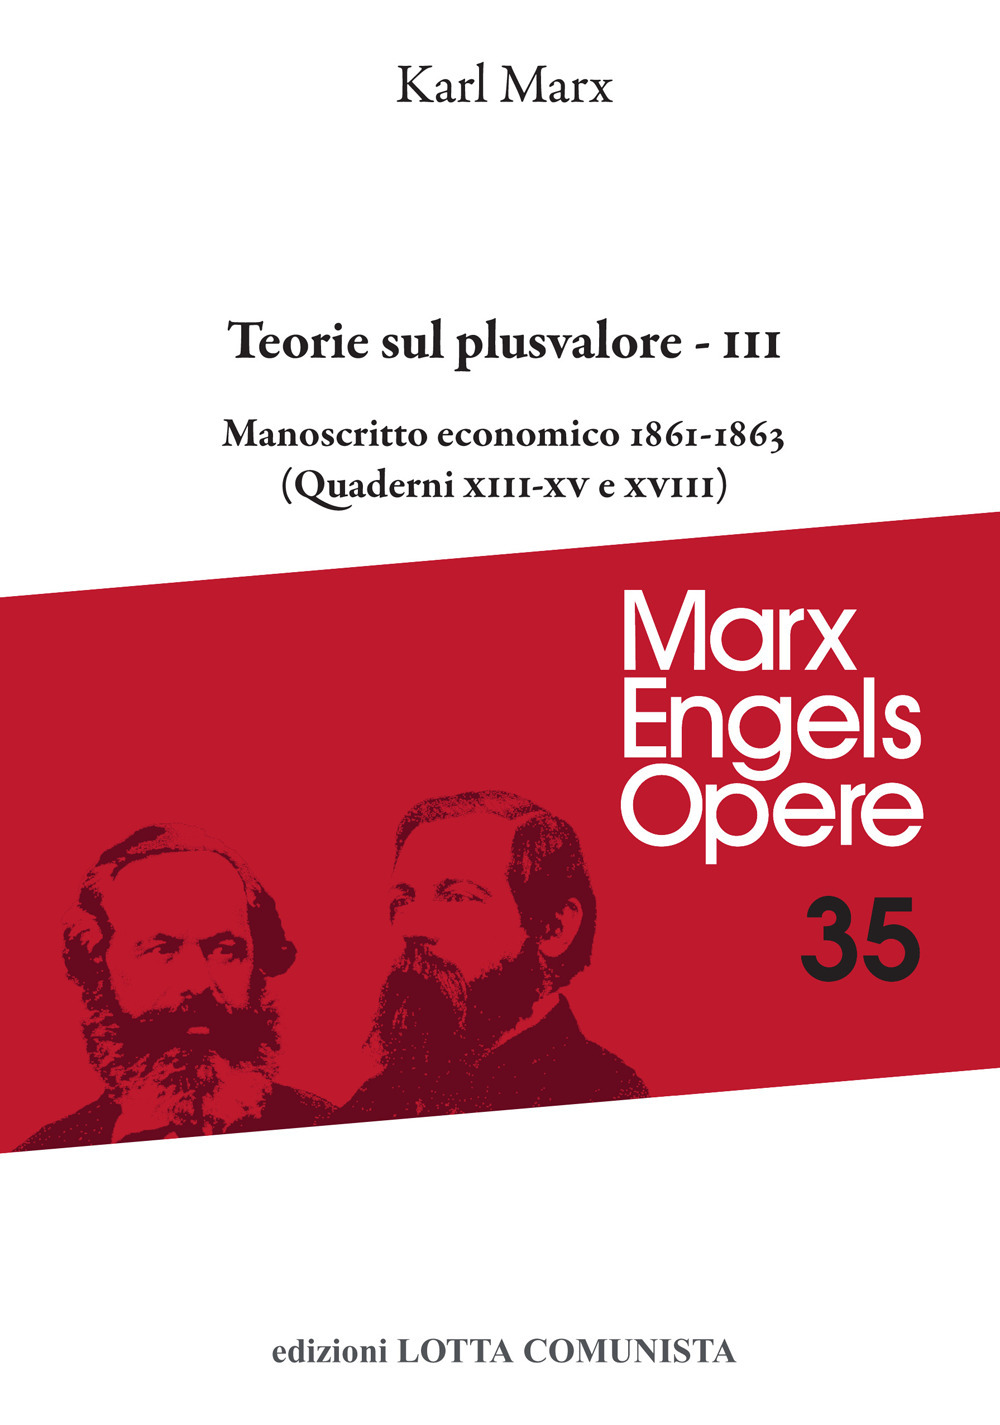 Libri Karl Marx - Opere Vol 35/3 NUOVO SIGILLATO, EDIZIONE DEL 25/10/2022 SUBITO DISPONIBILE